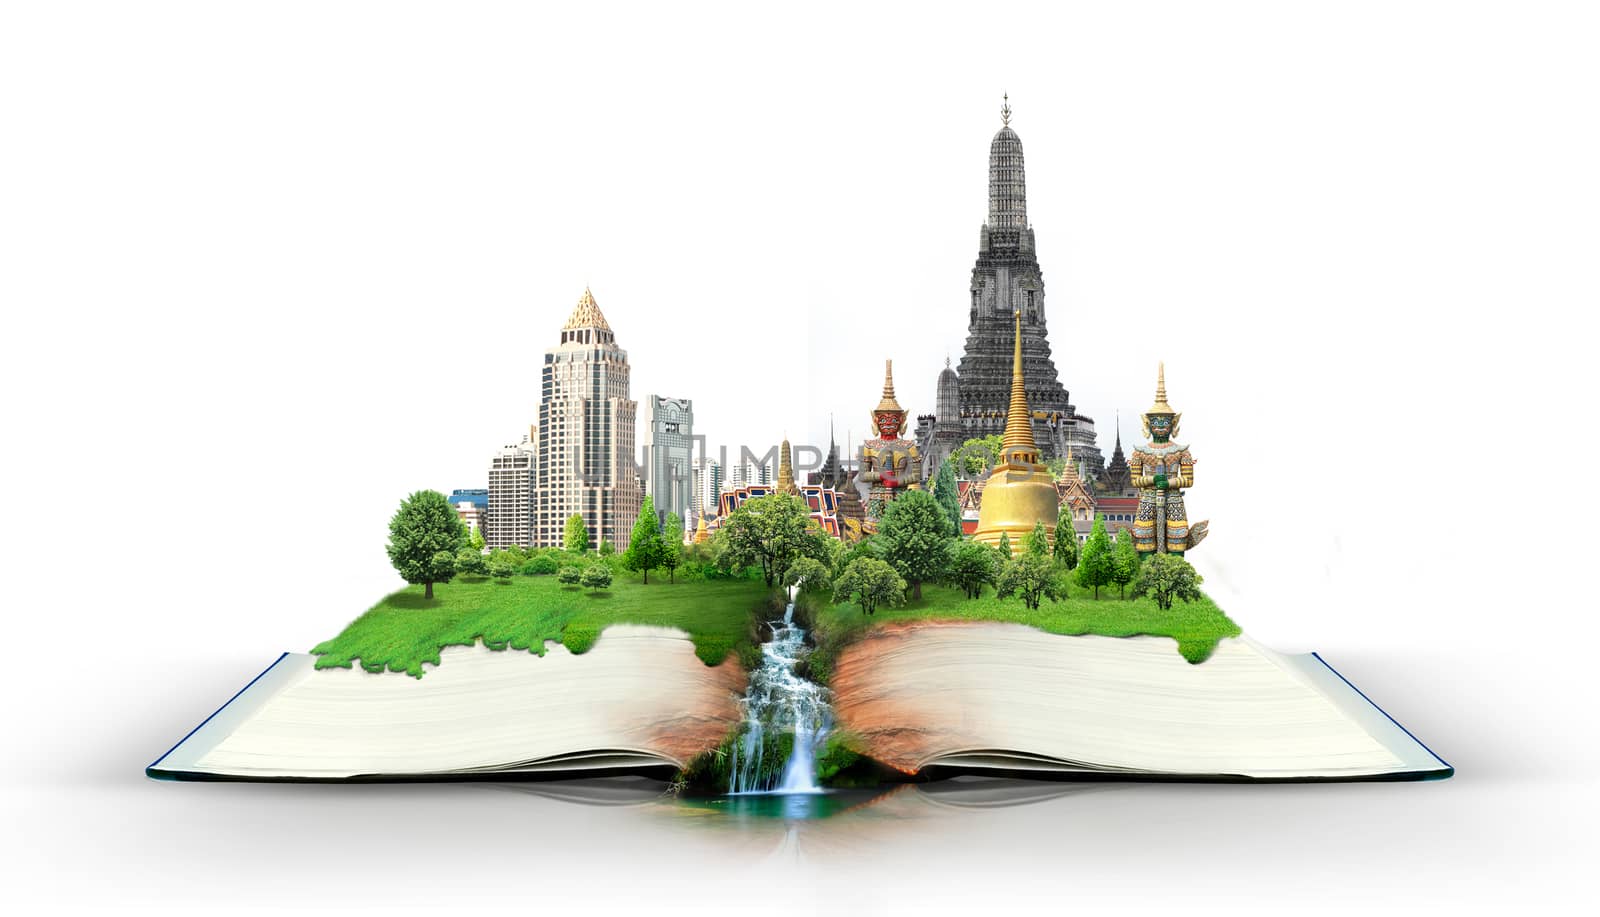 book with thailand bangkok travel concept